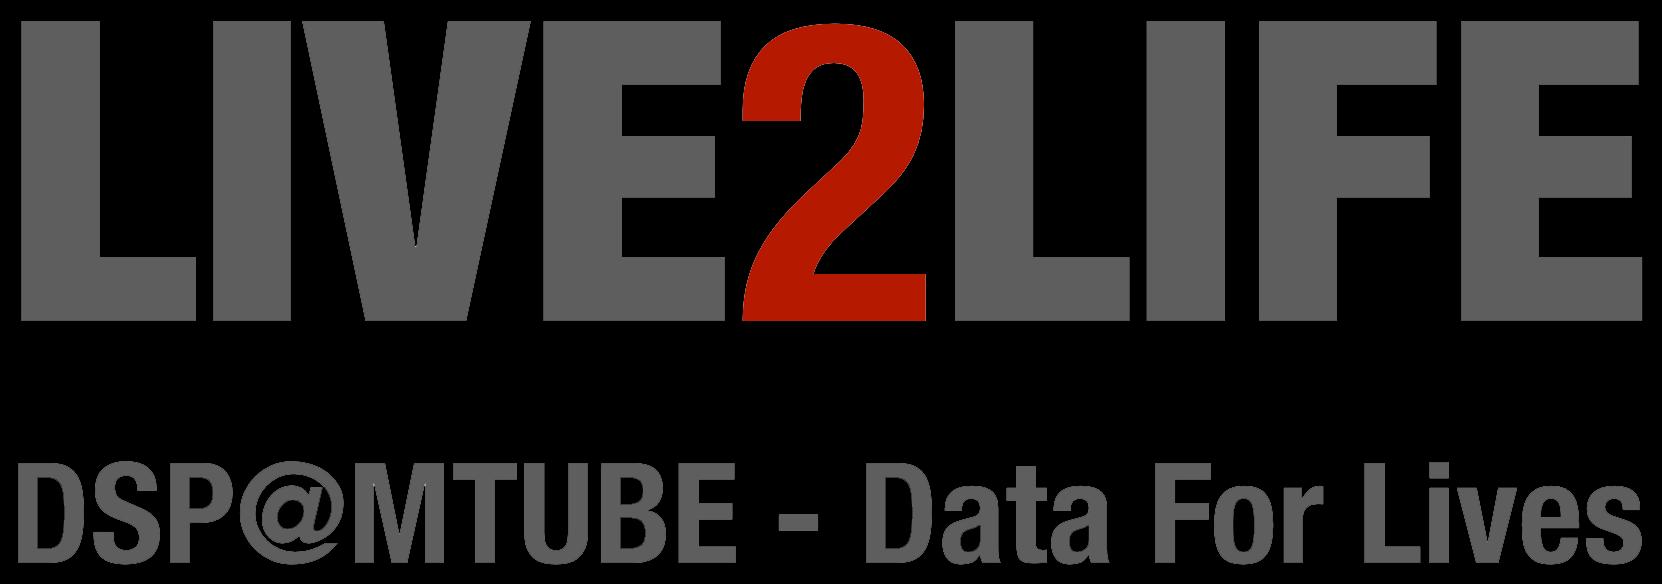 Live2Life_logo